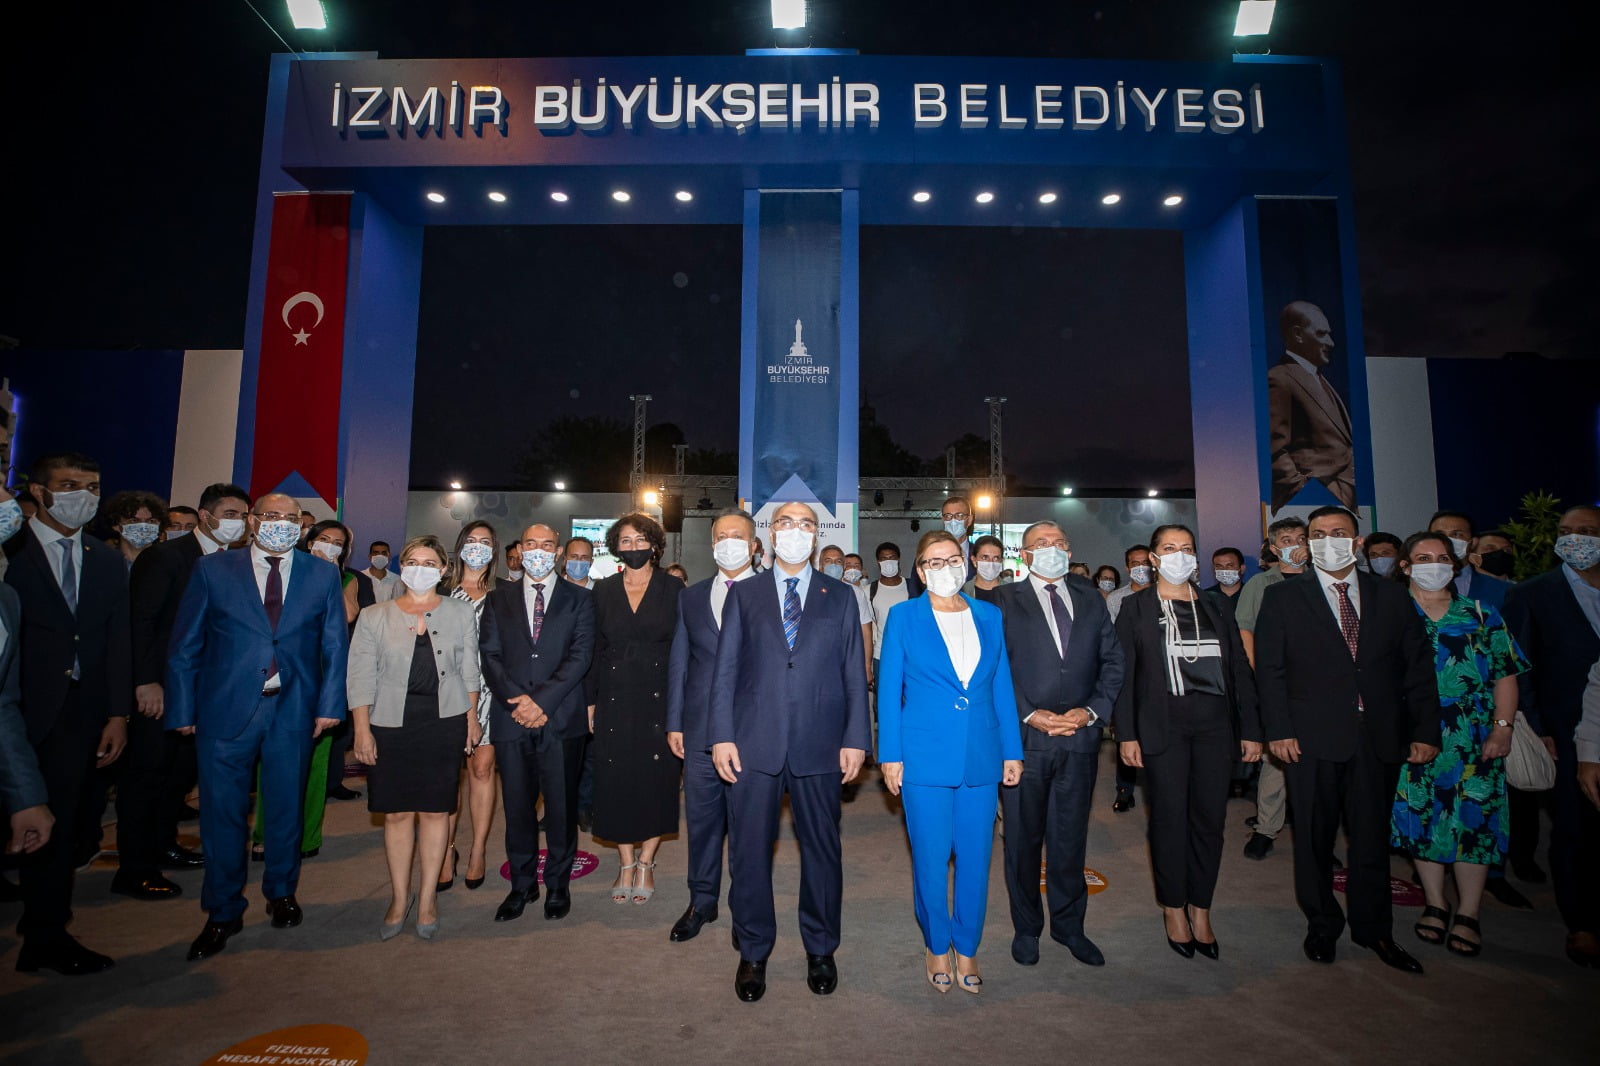 İzmir Enternasyonal Fuarı 89’uncu kez açıldı